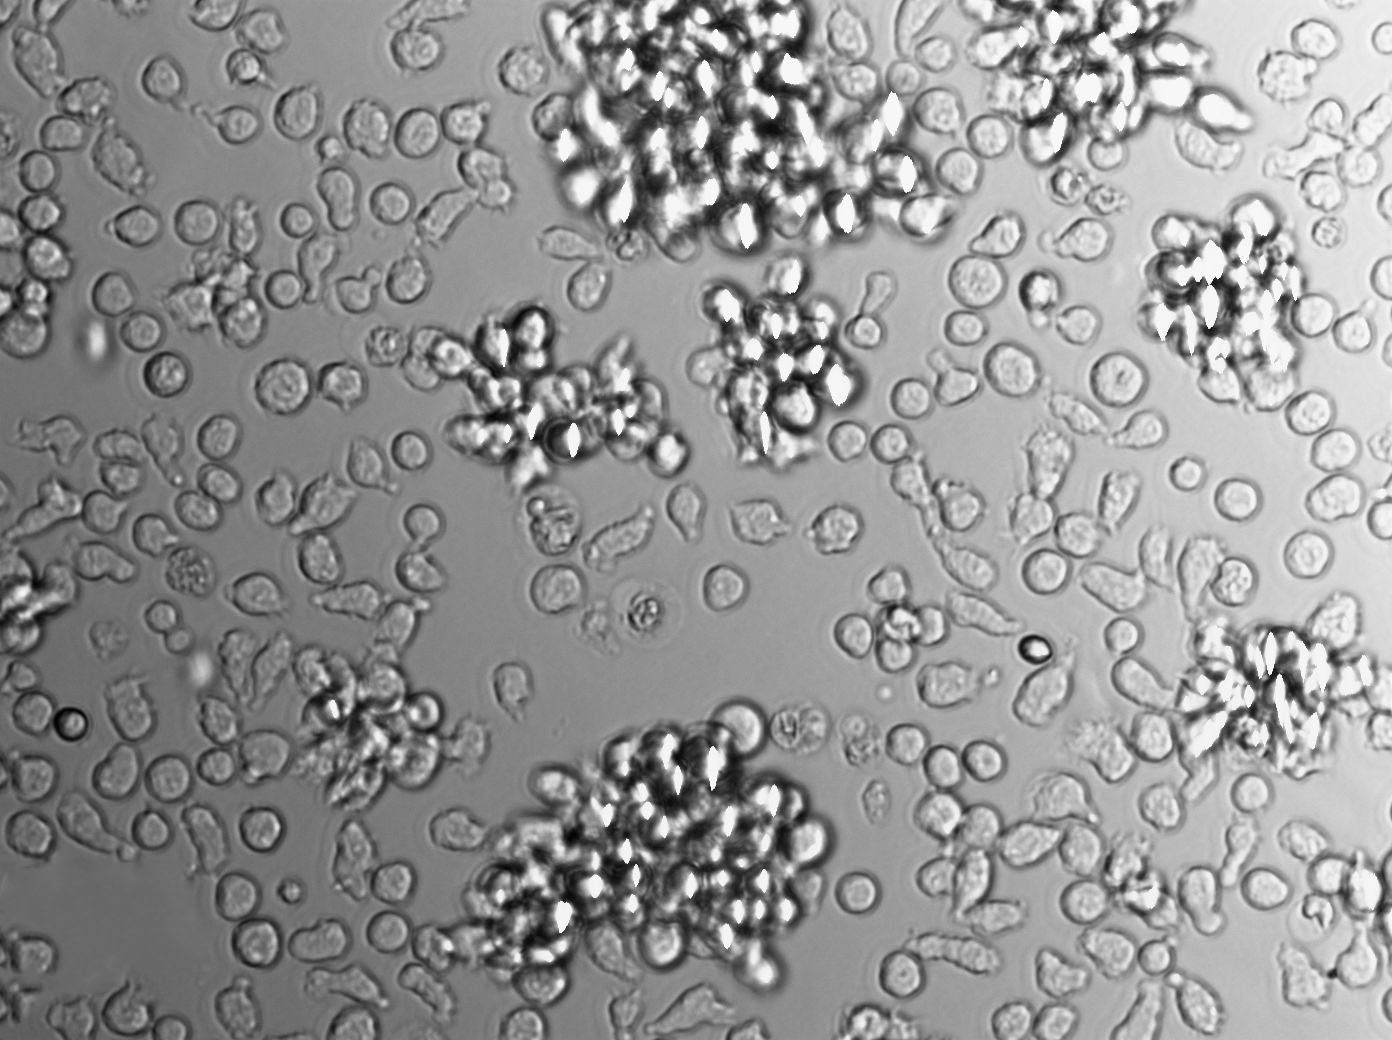 GRSL Cell|小鼠胸腺性白血病细胞